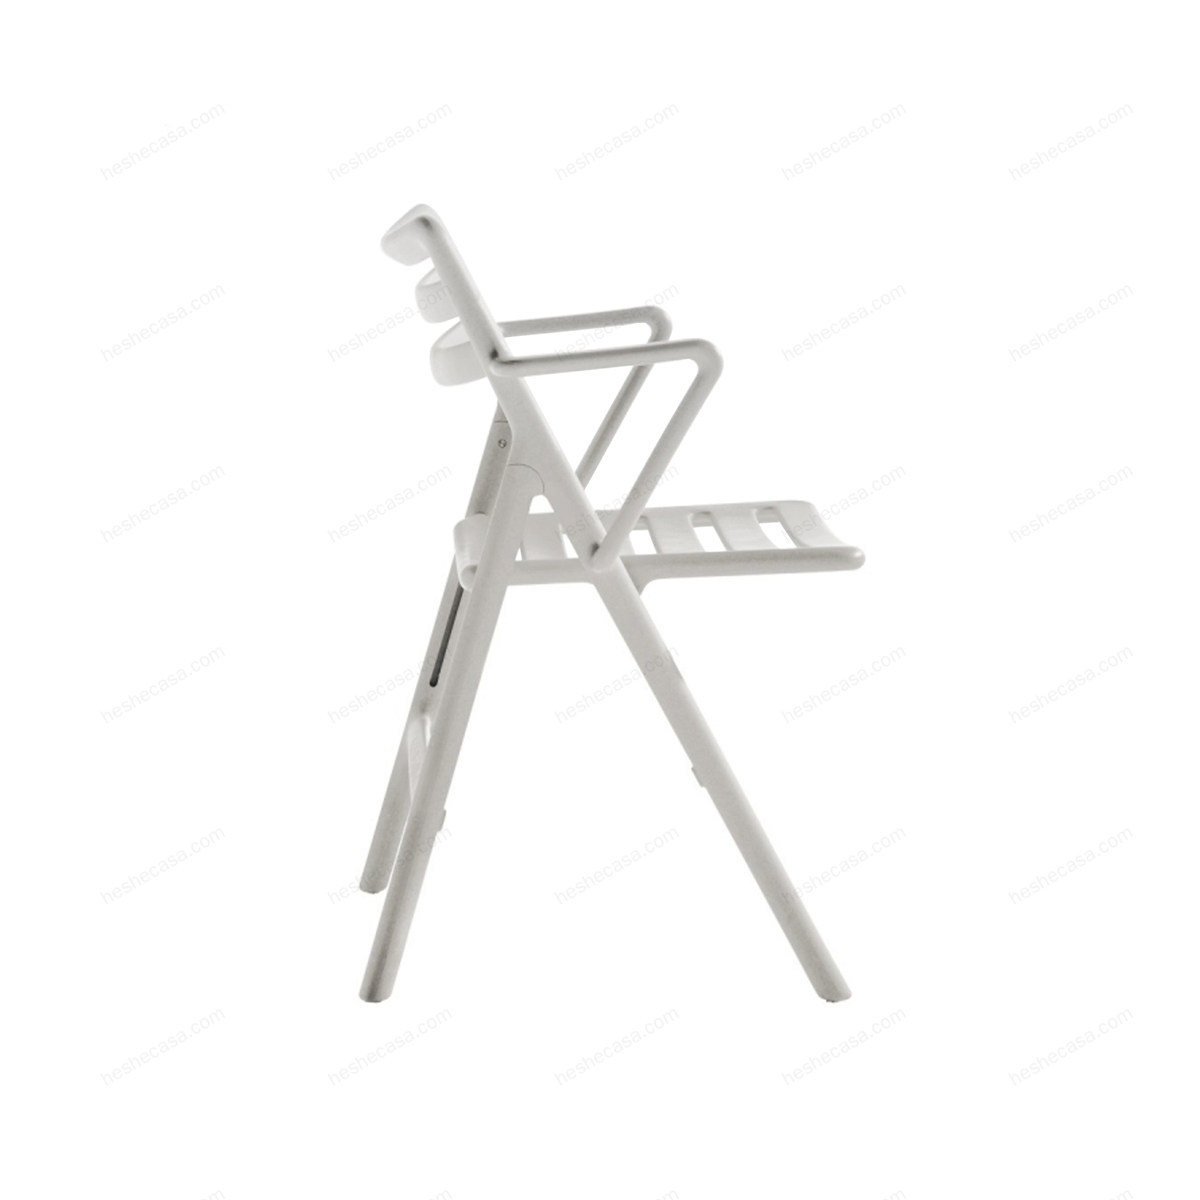 Folding-Air-Chair单椅